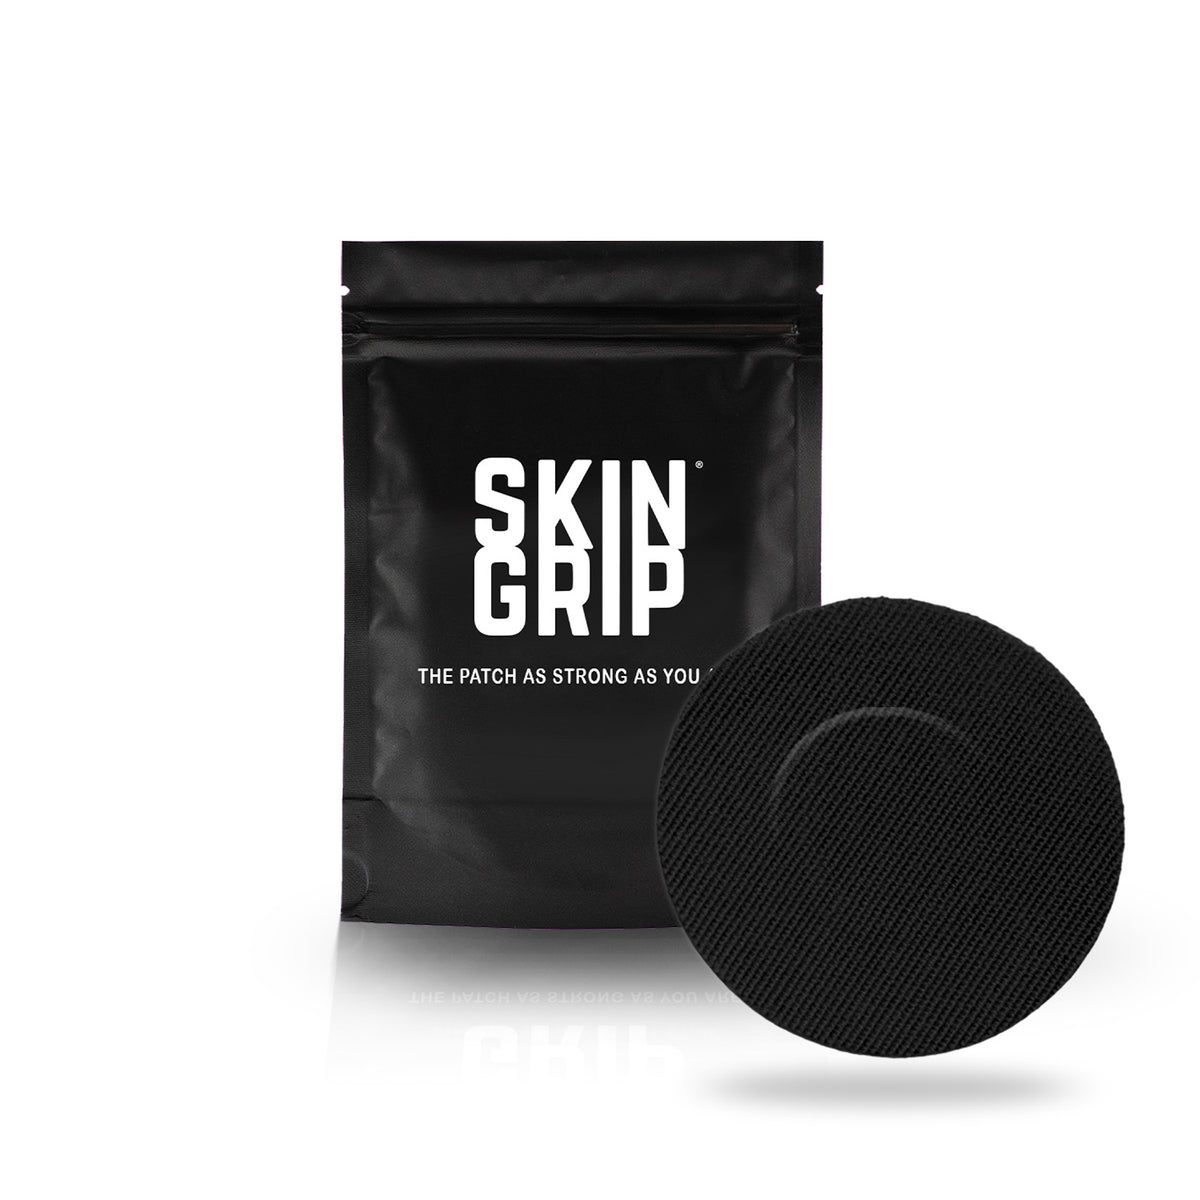 Skin Grip Original - Dexcom G7 Adhesive Patches - 20 Pack